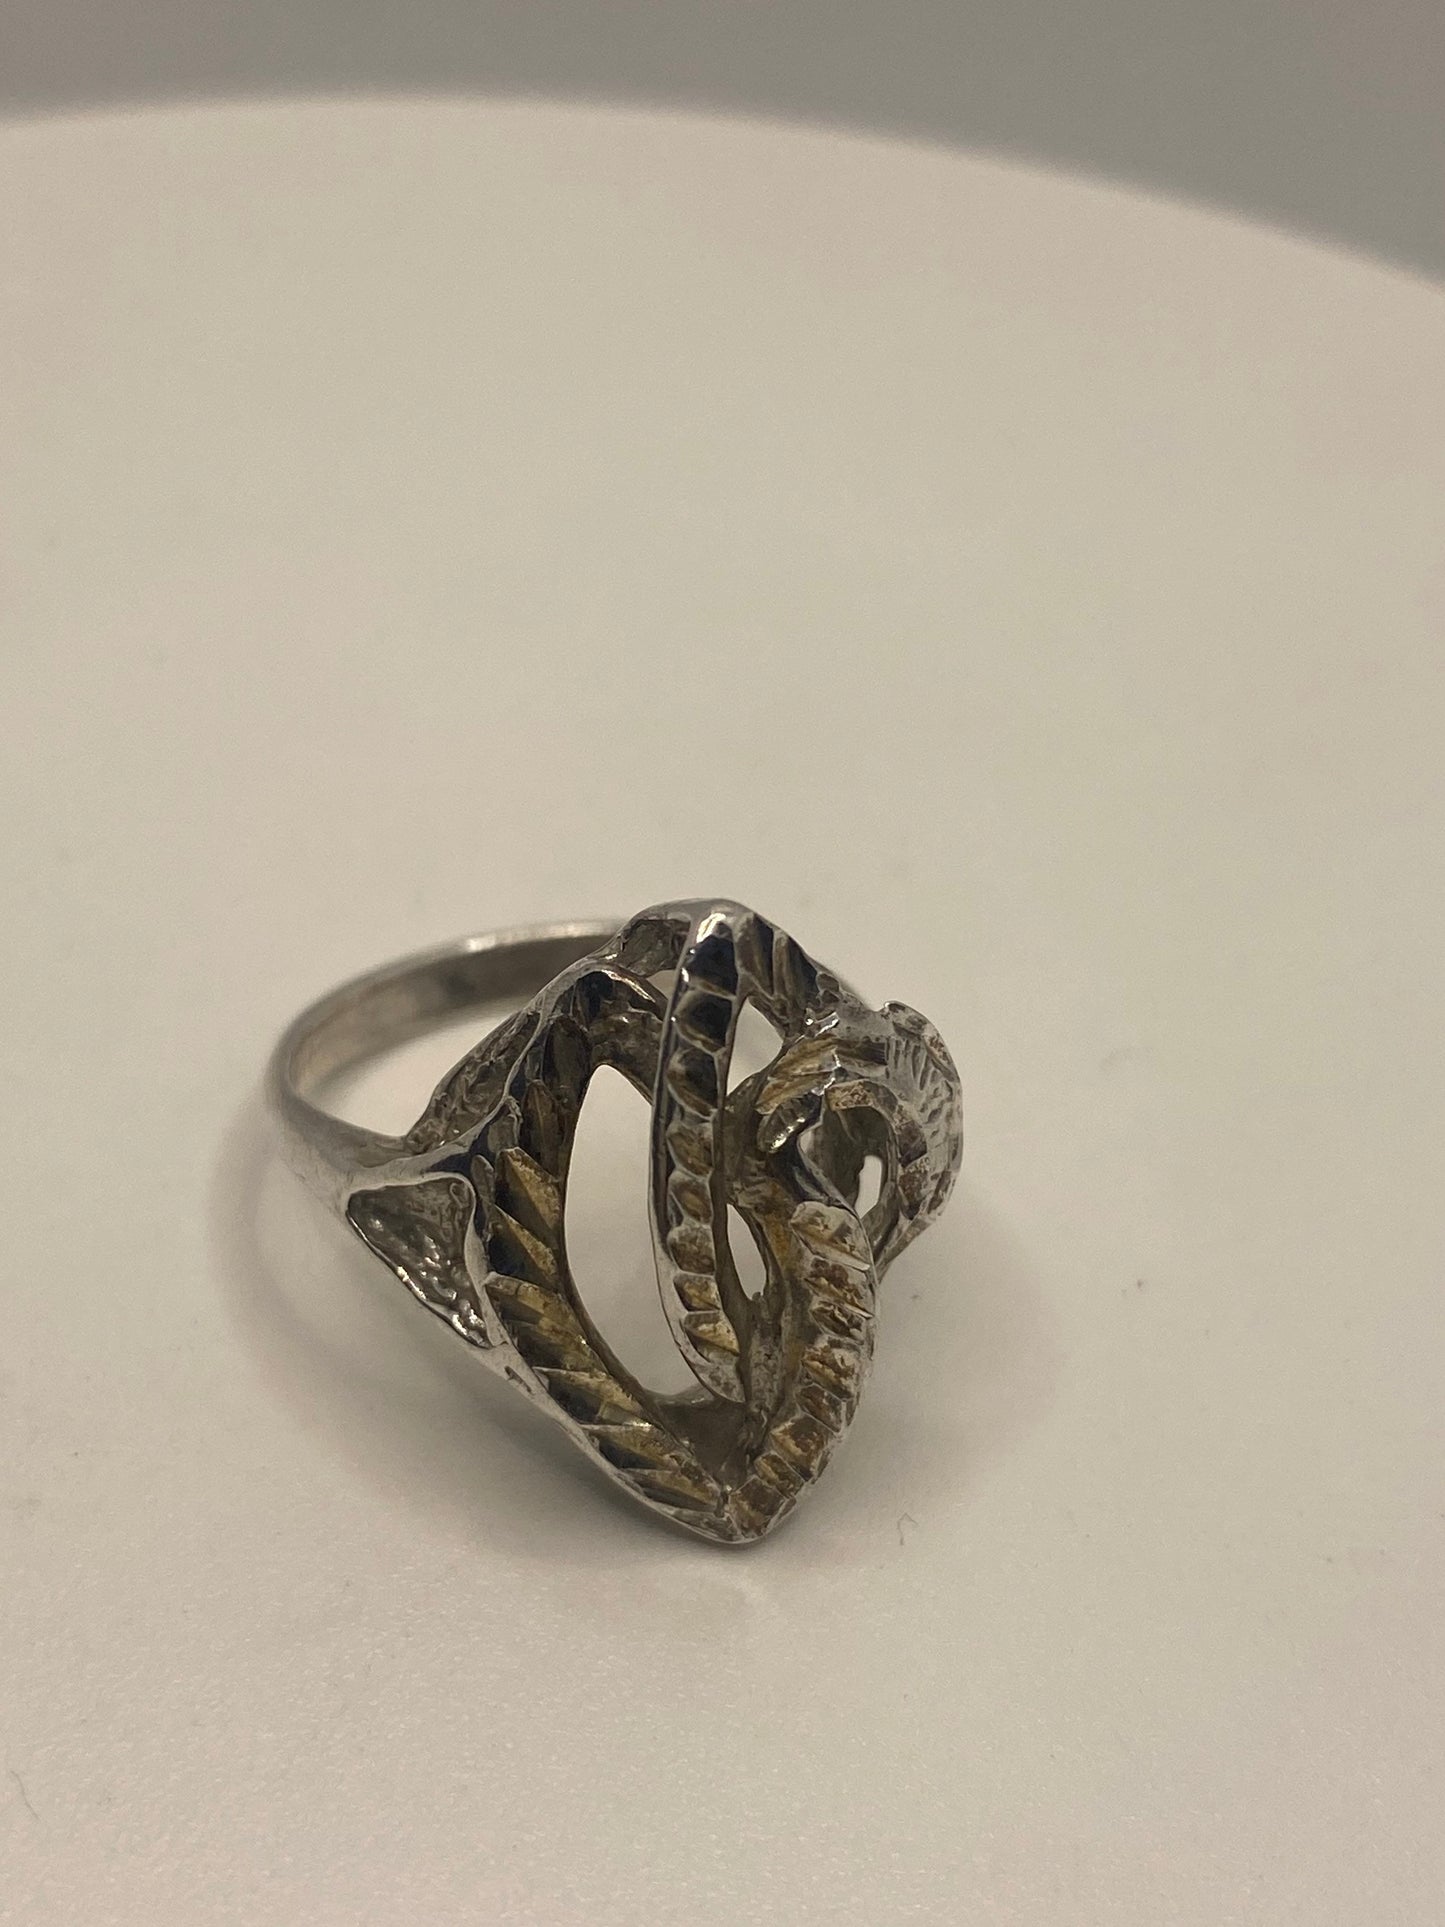 Vintage 925 Sterling Silver Filigree Ring